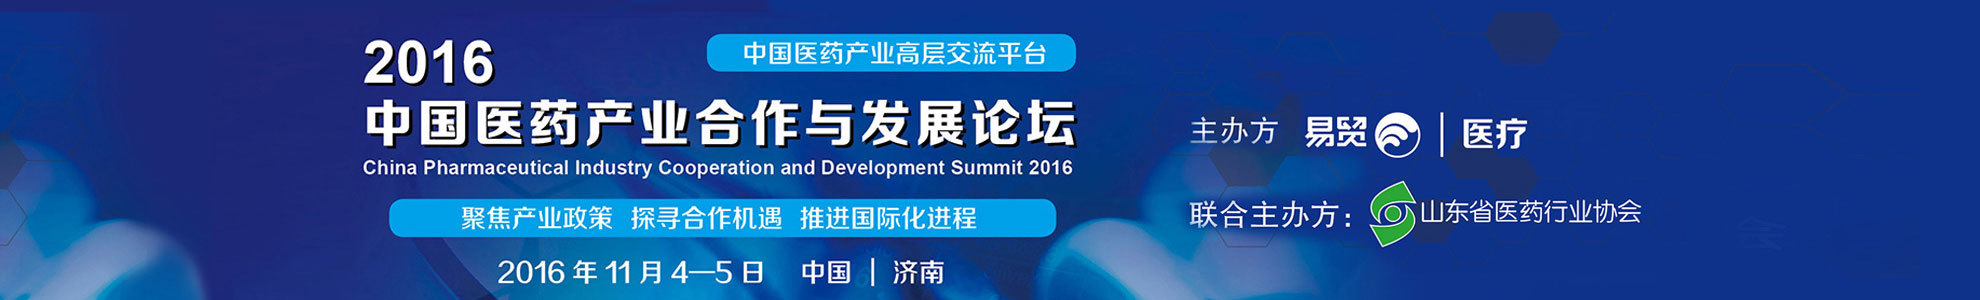 2016中国医药产业合作与发展论坛